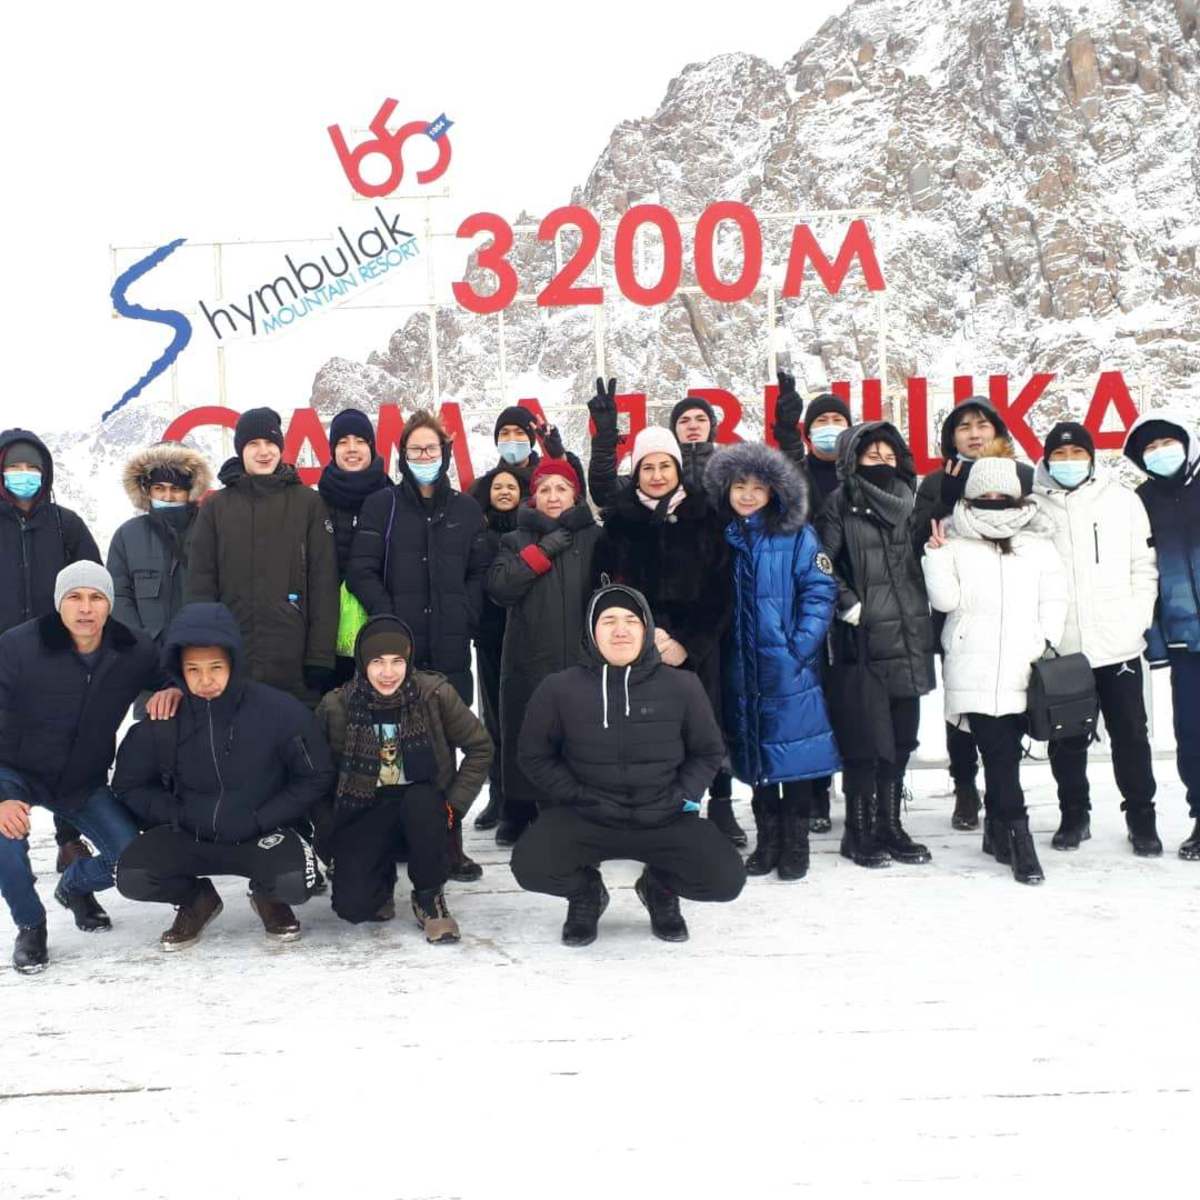 2021 жылдың 15 қарашасында балалар Шымбұлақ тау шаңғысы курортында болды. Биіктігі 3200 м.15.11.2021 г. Ребята посетили горнолыжный курорт Шымбулак. Высота 3 200 м.